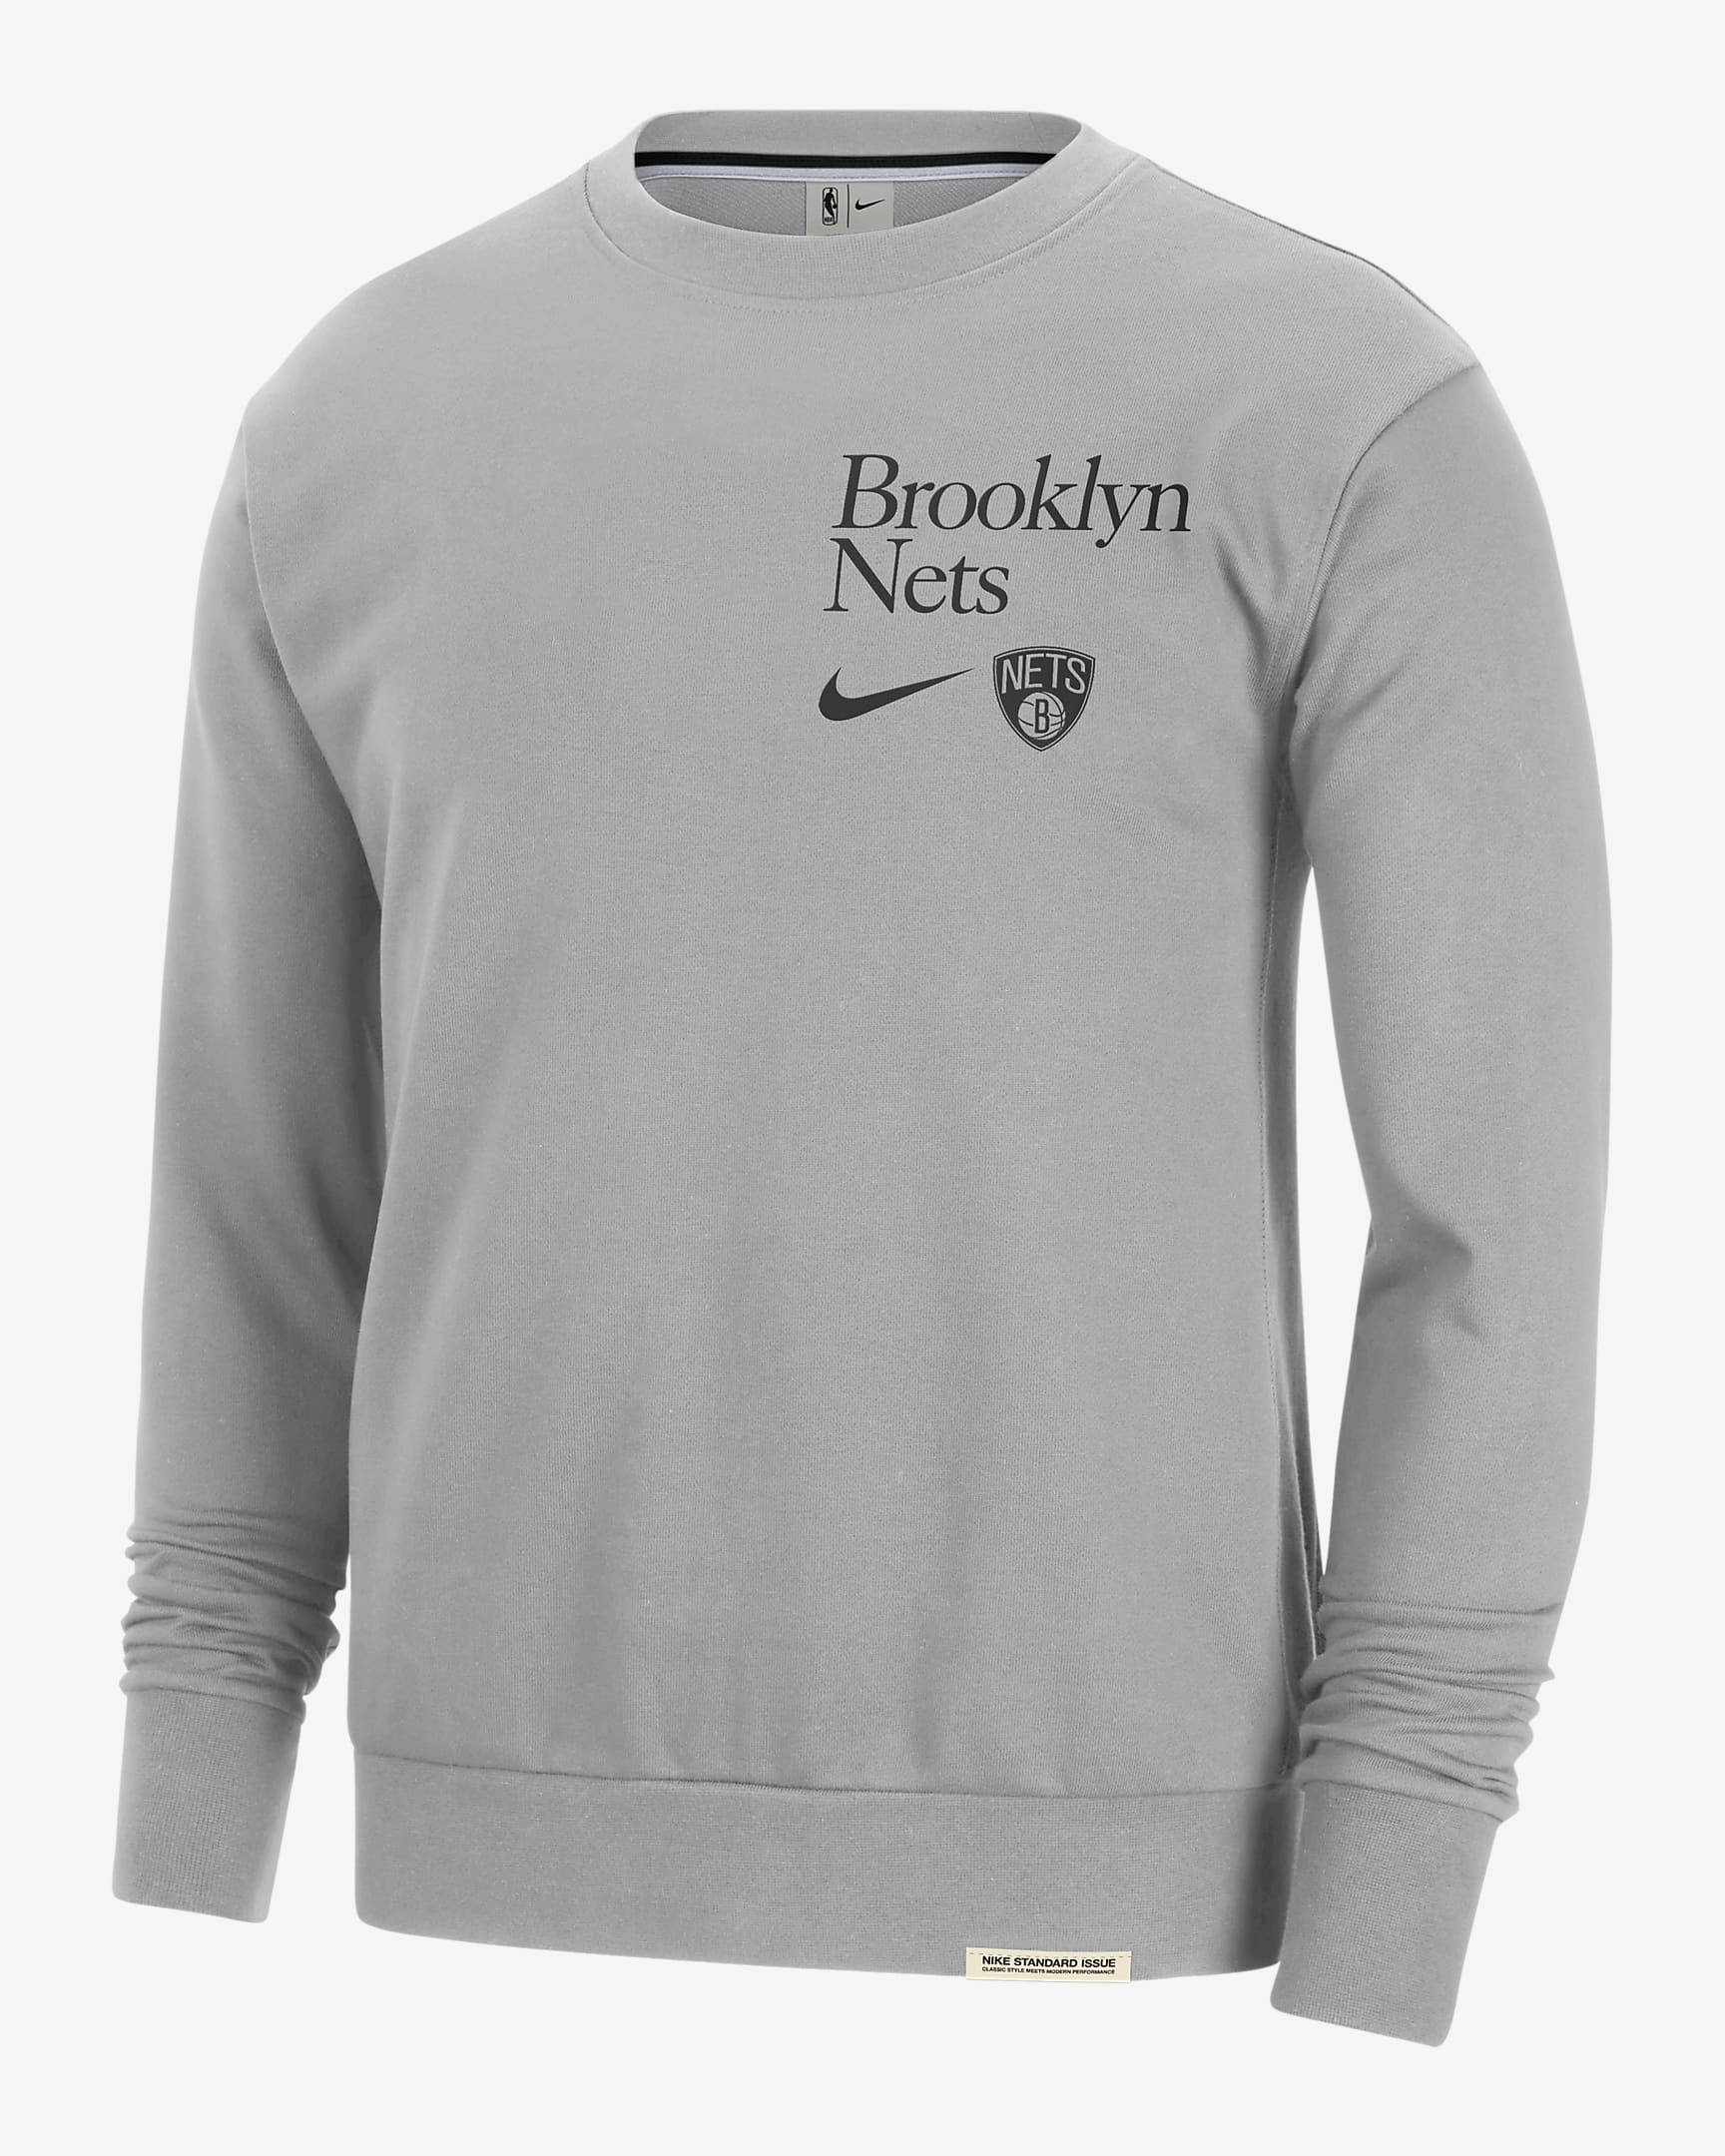 Brooklyn Nets Standard Issue Men's Nike Dri-FIT NBA Crew-Neck ...